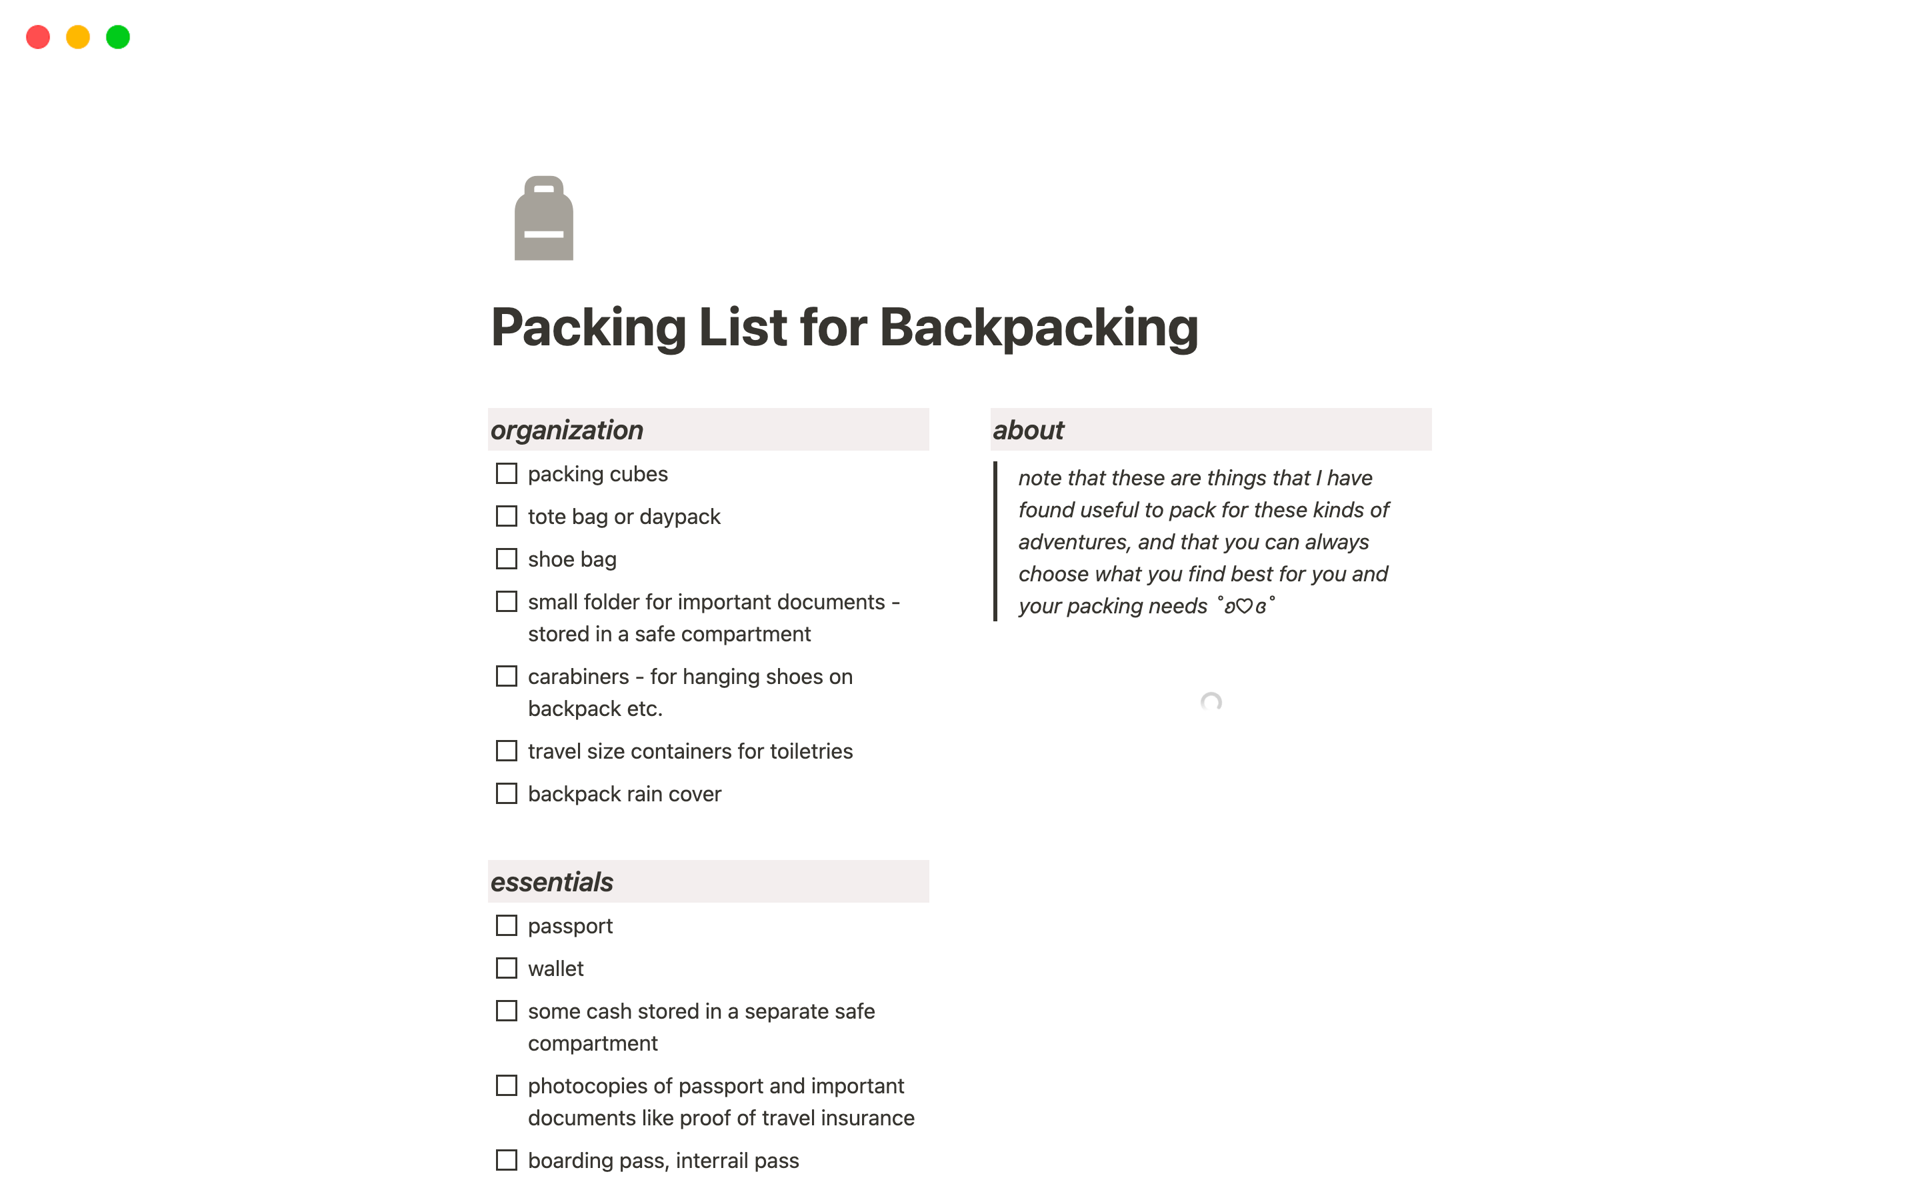 Uma prévia do modelo para Simple Packing List for Backpacking